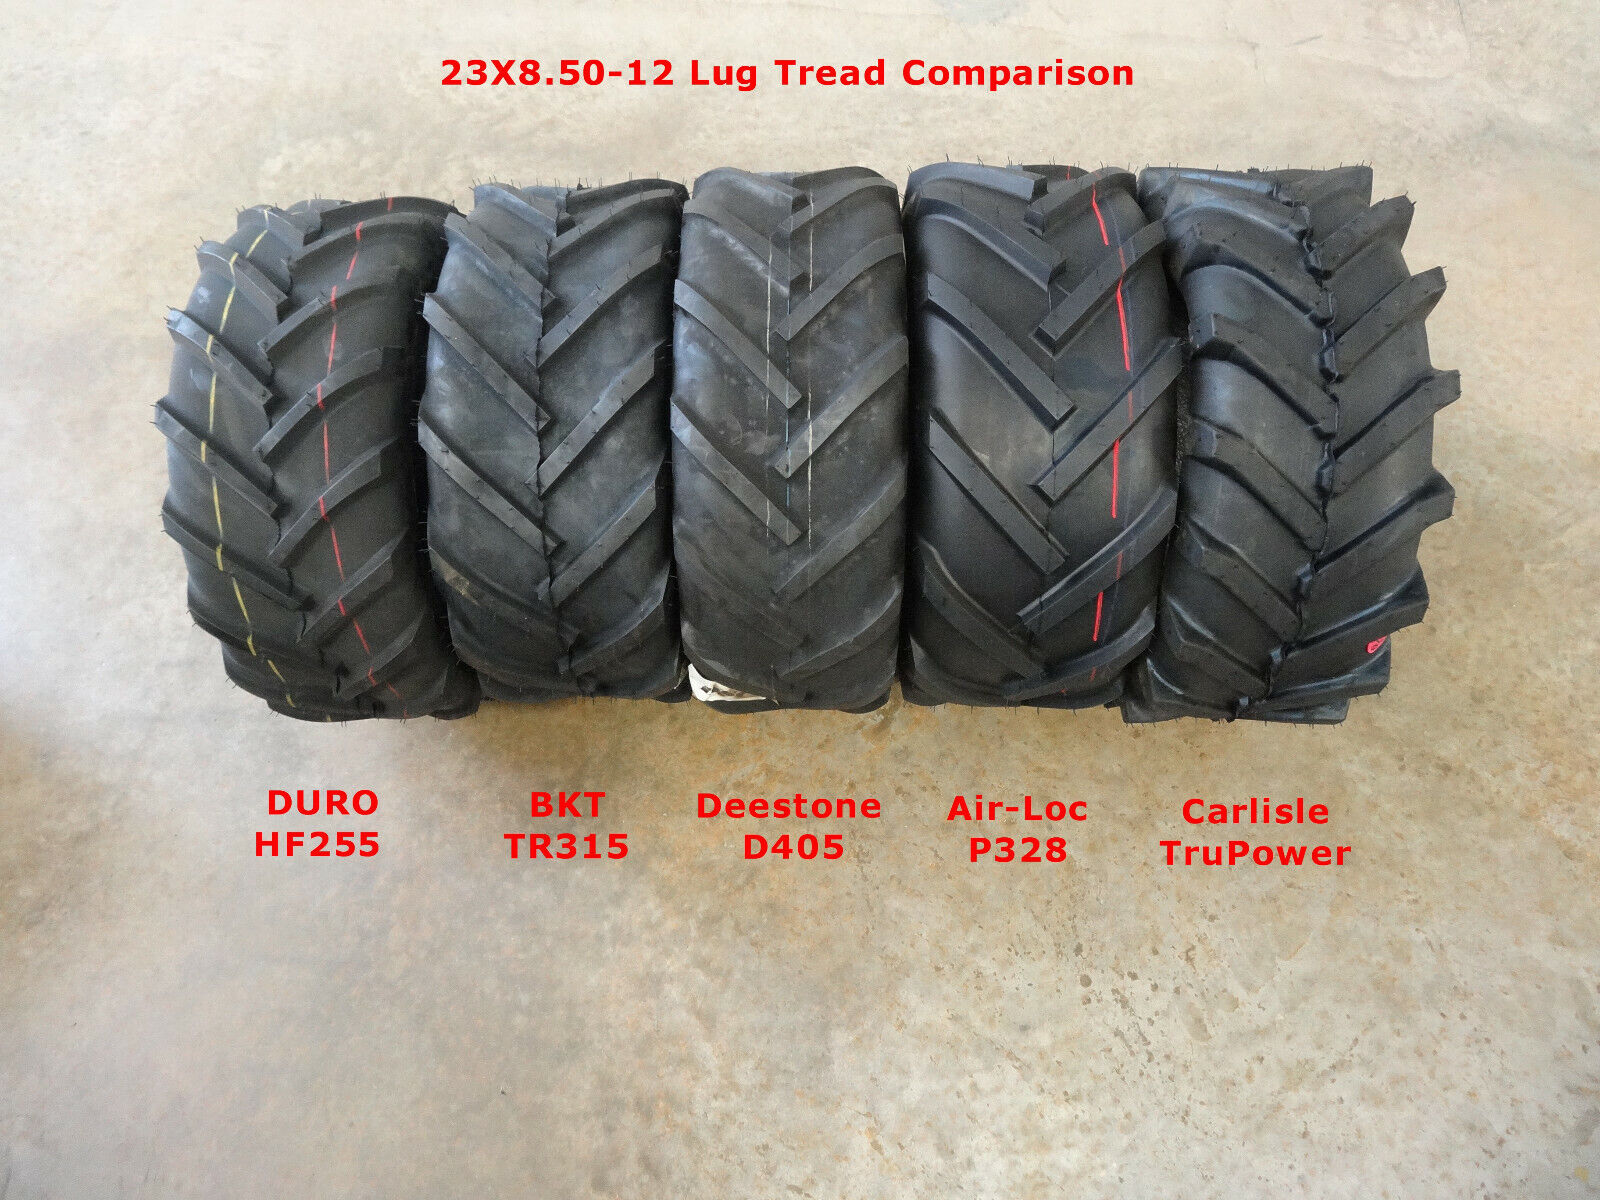 TWO 23X8.50-12 Air-Loc R1 Bar Lug Traction Tires 6 ply Lawn Tractor WIDE TREAD! Air-Loc LG4909 - фотография #5